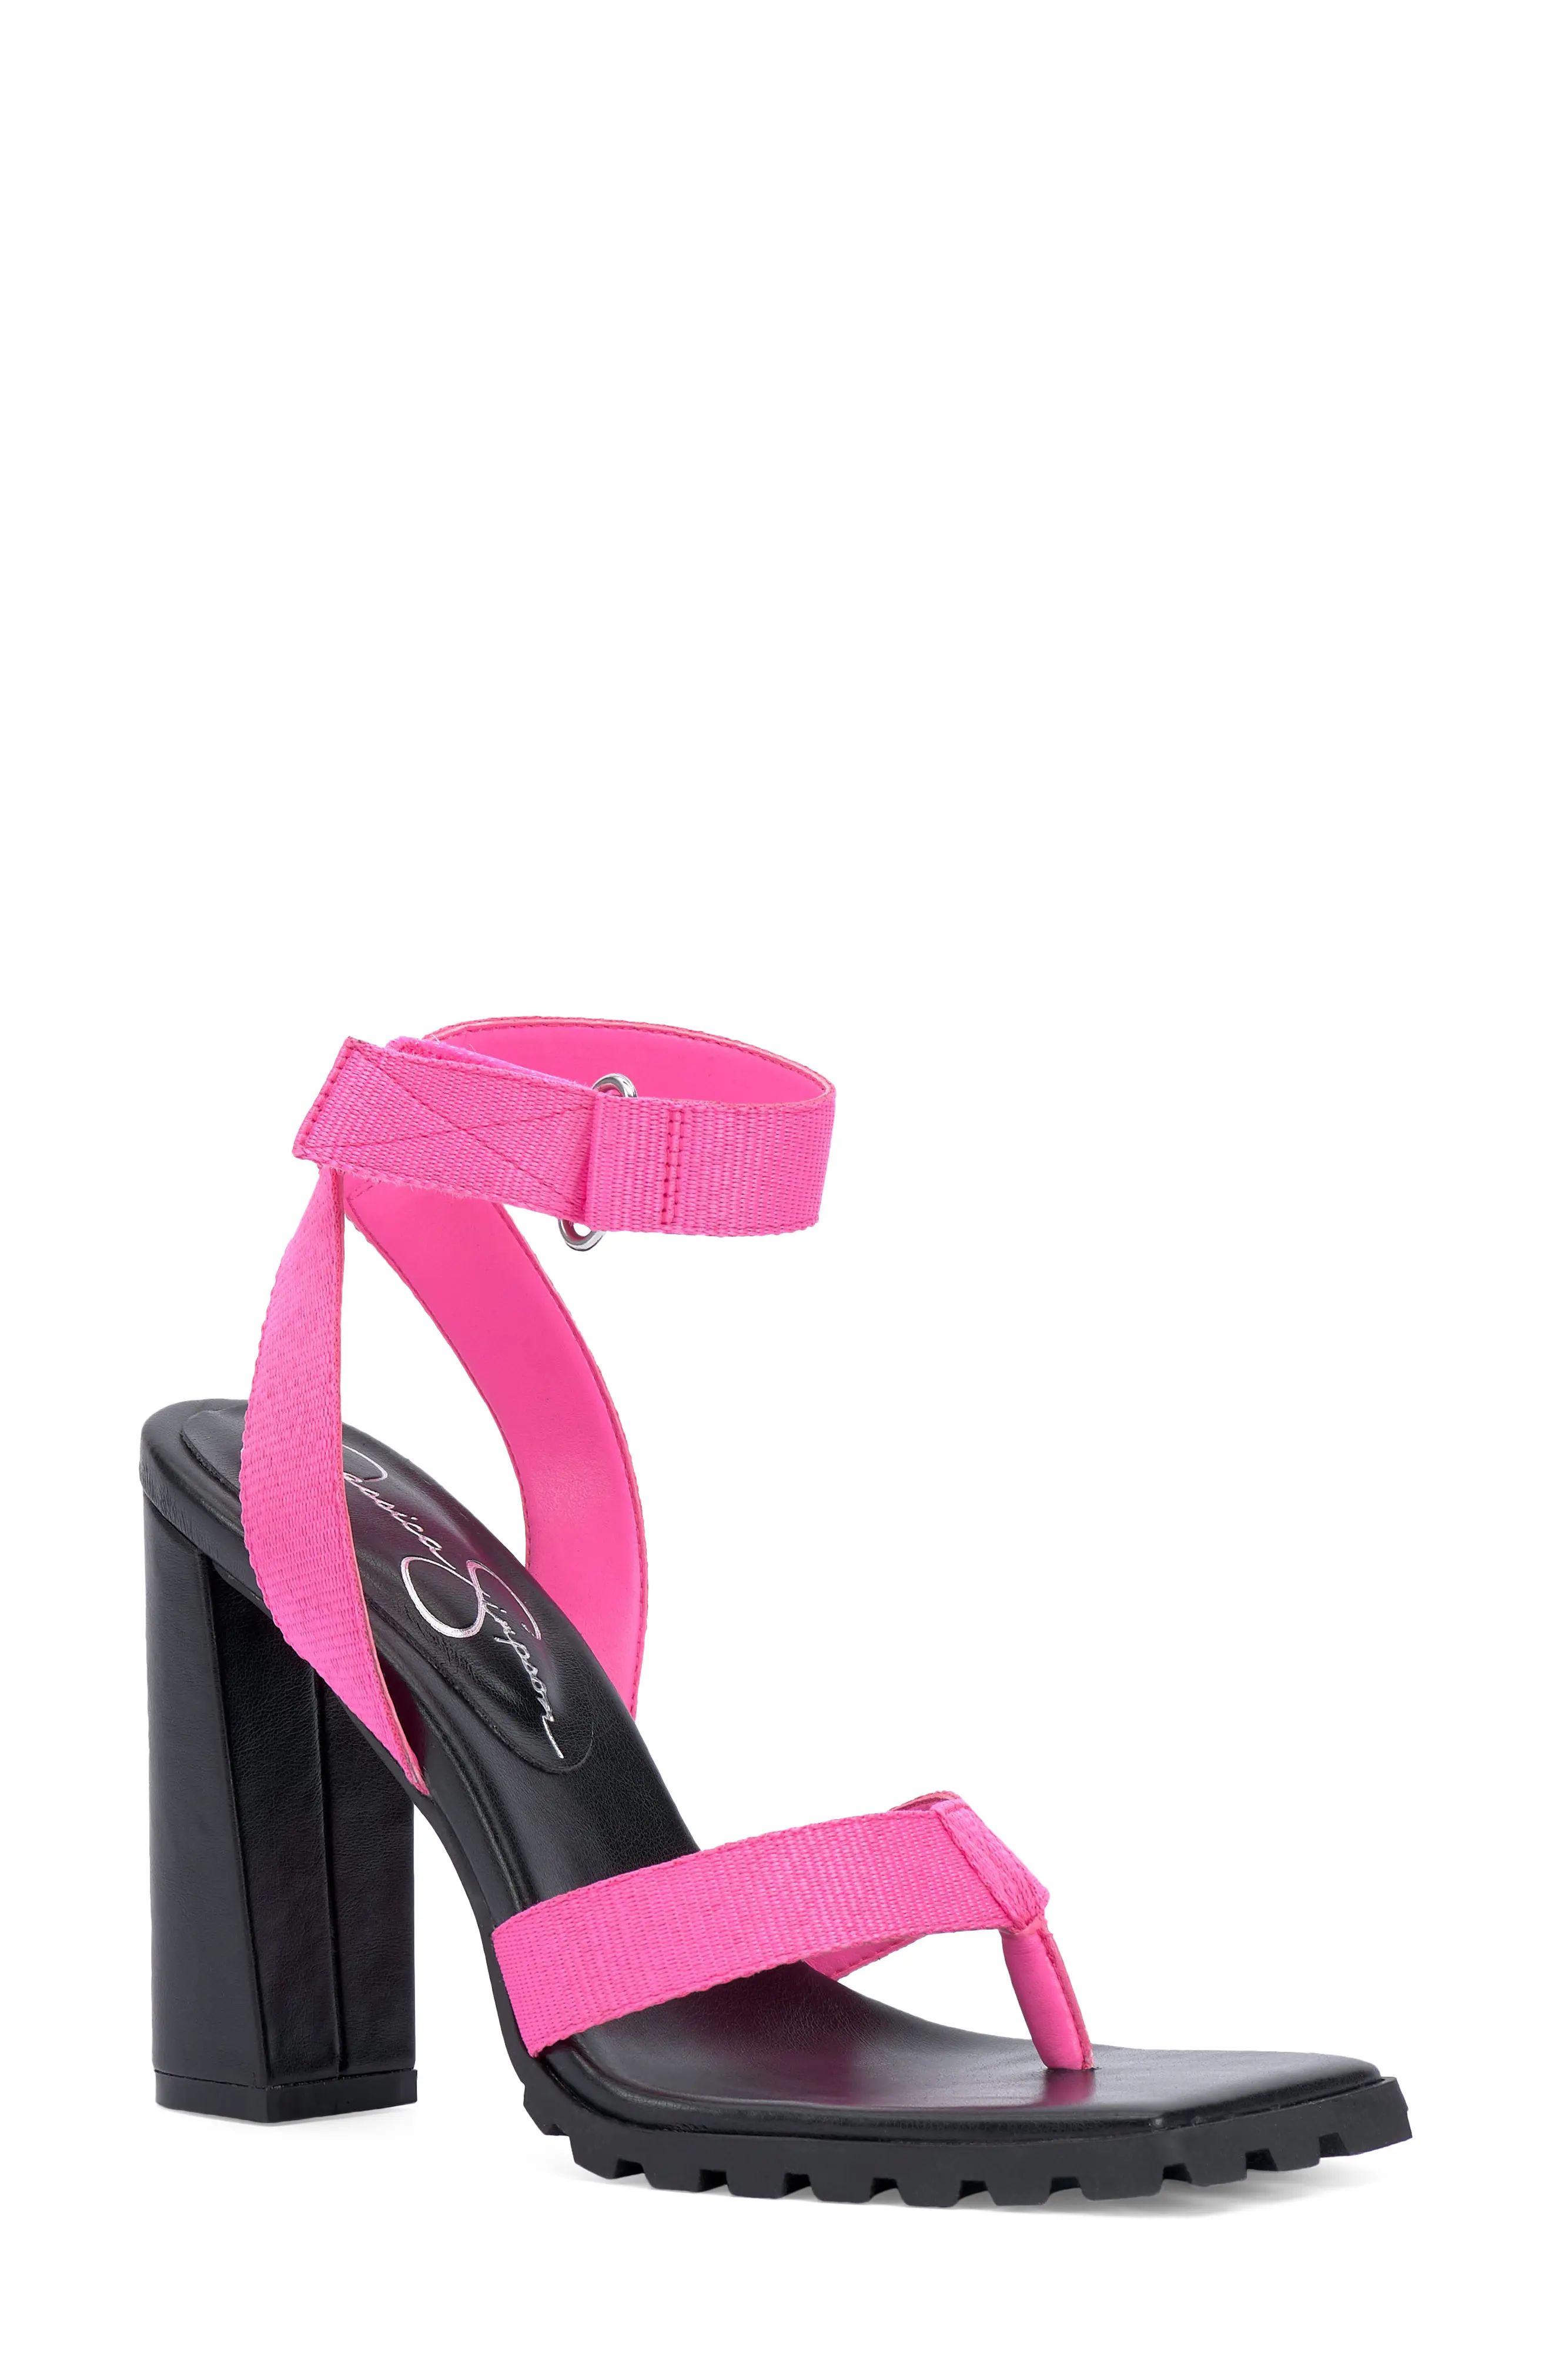 Jessica Simpson Kielne Sandal in Neon Pink at Nordstrom, Size 6 | Nordstrom